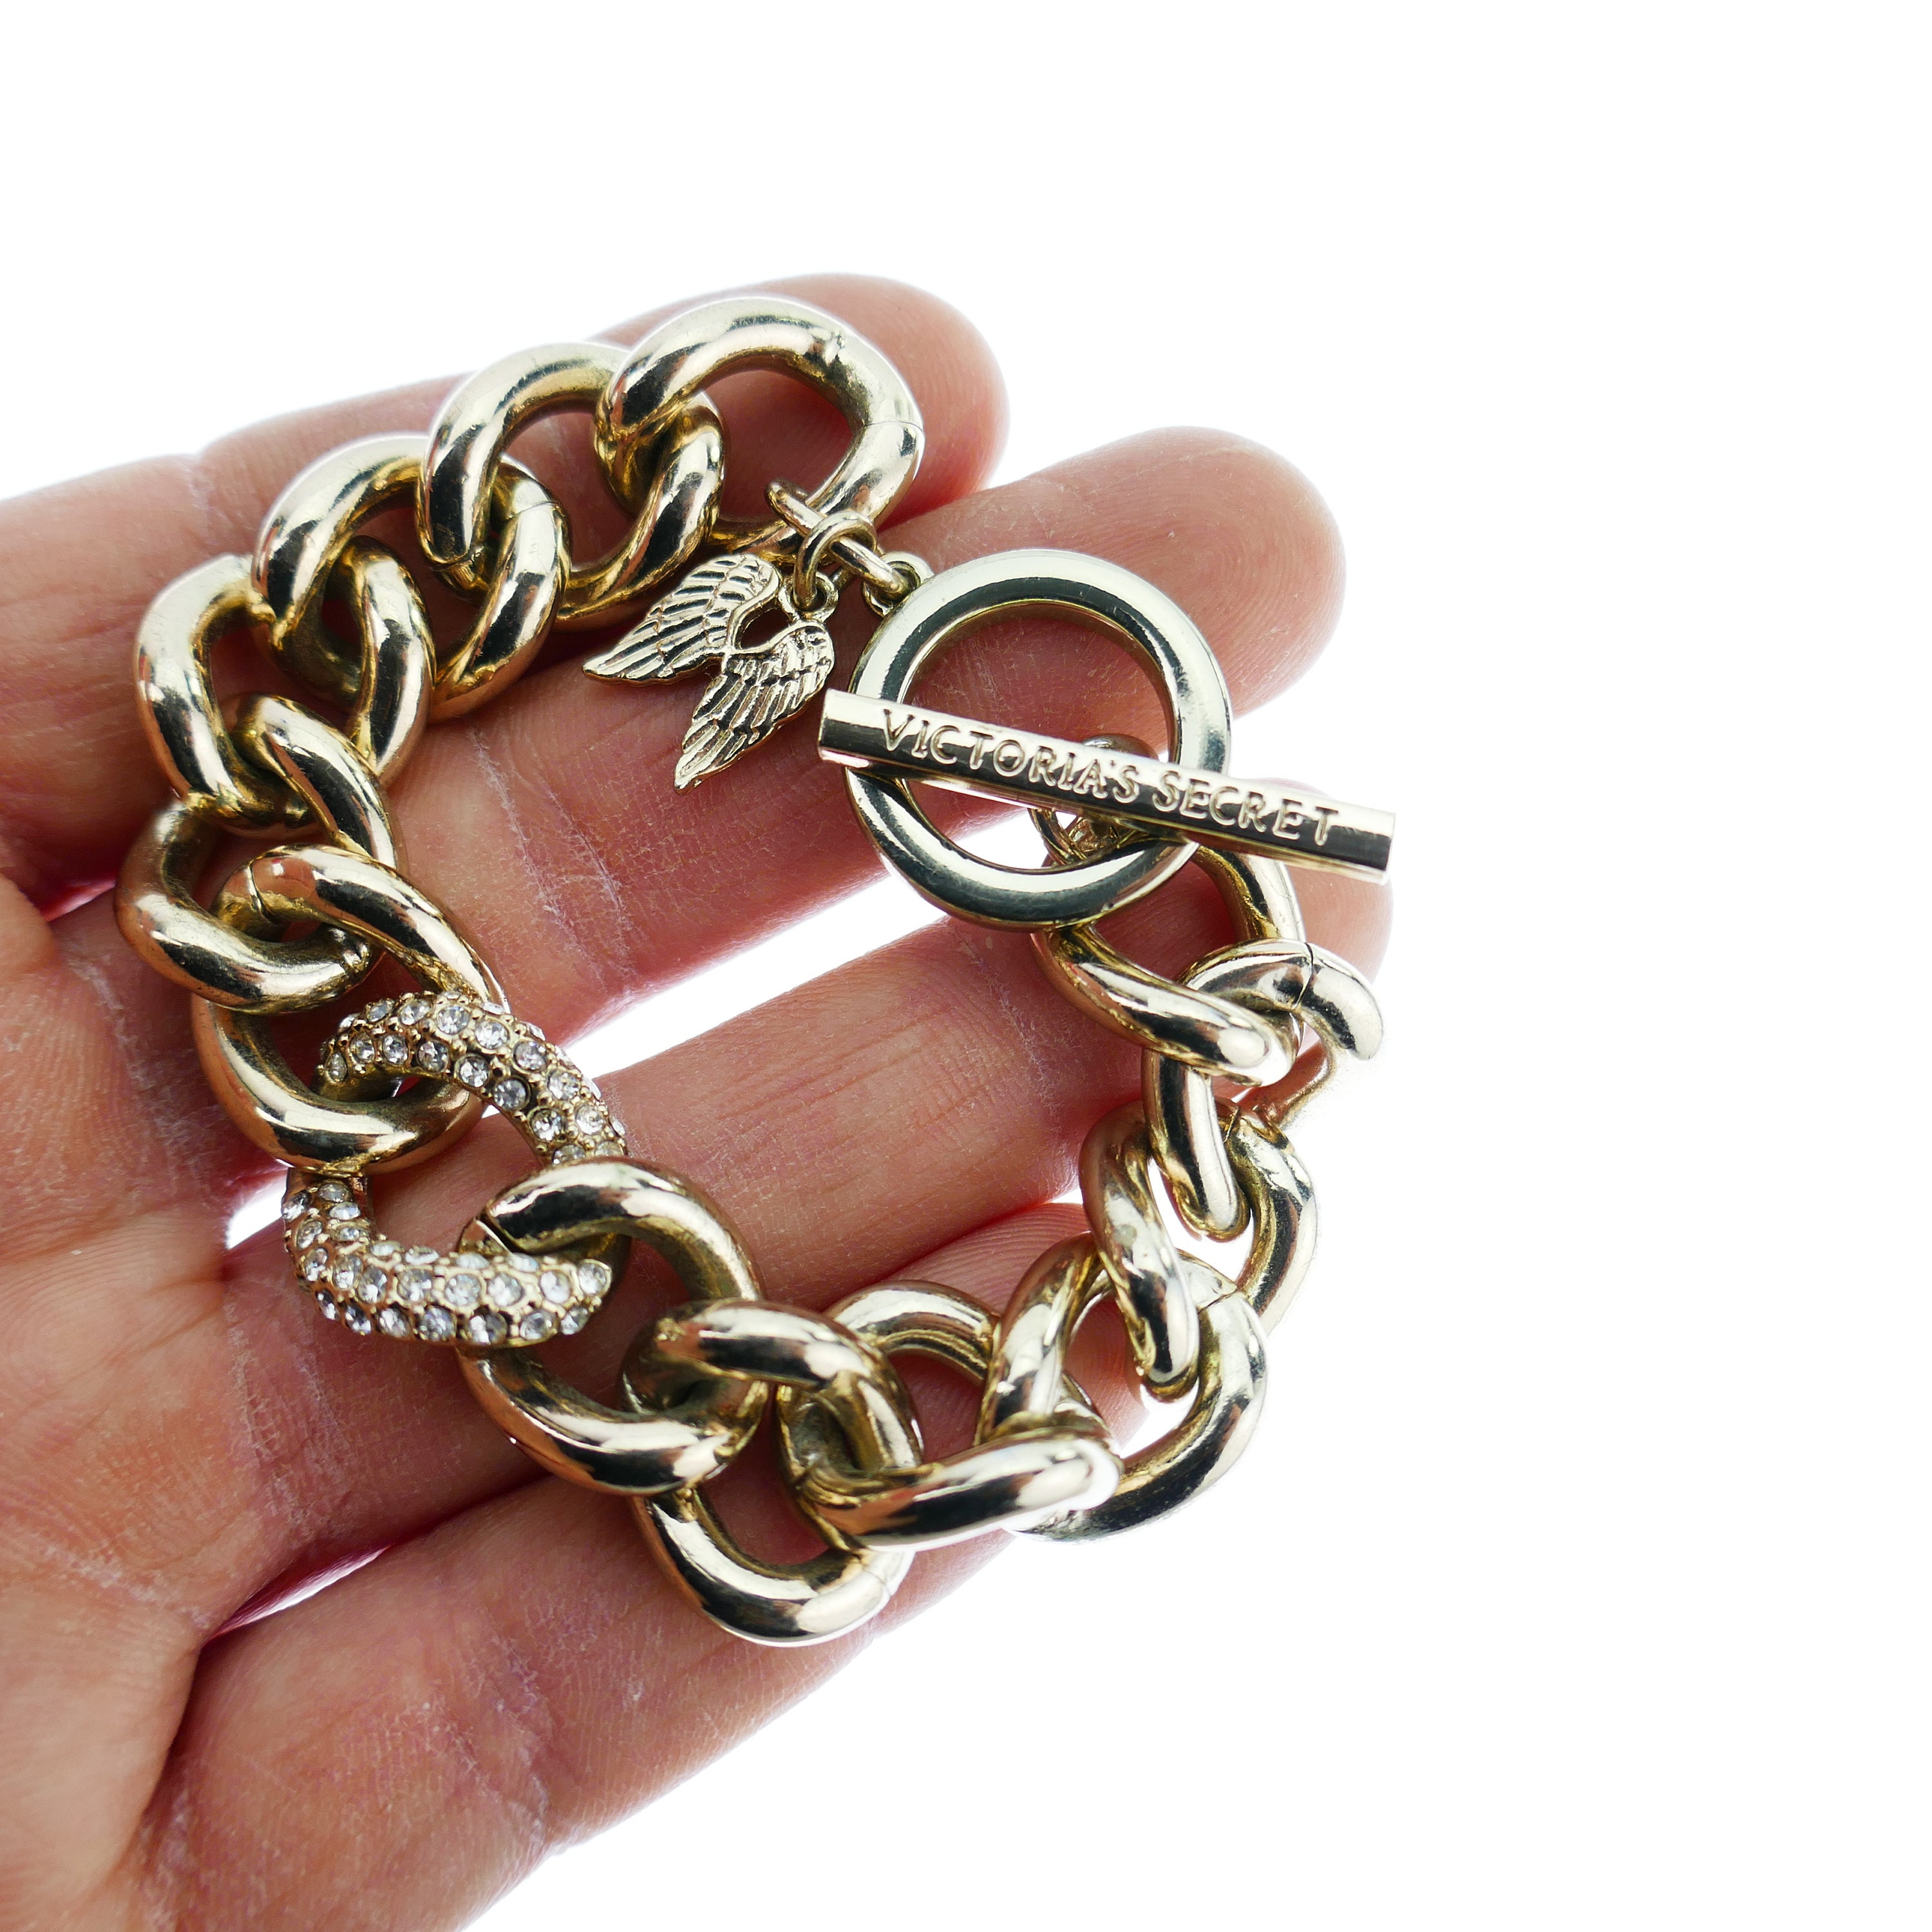 Victoria Small Chain Bracelet